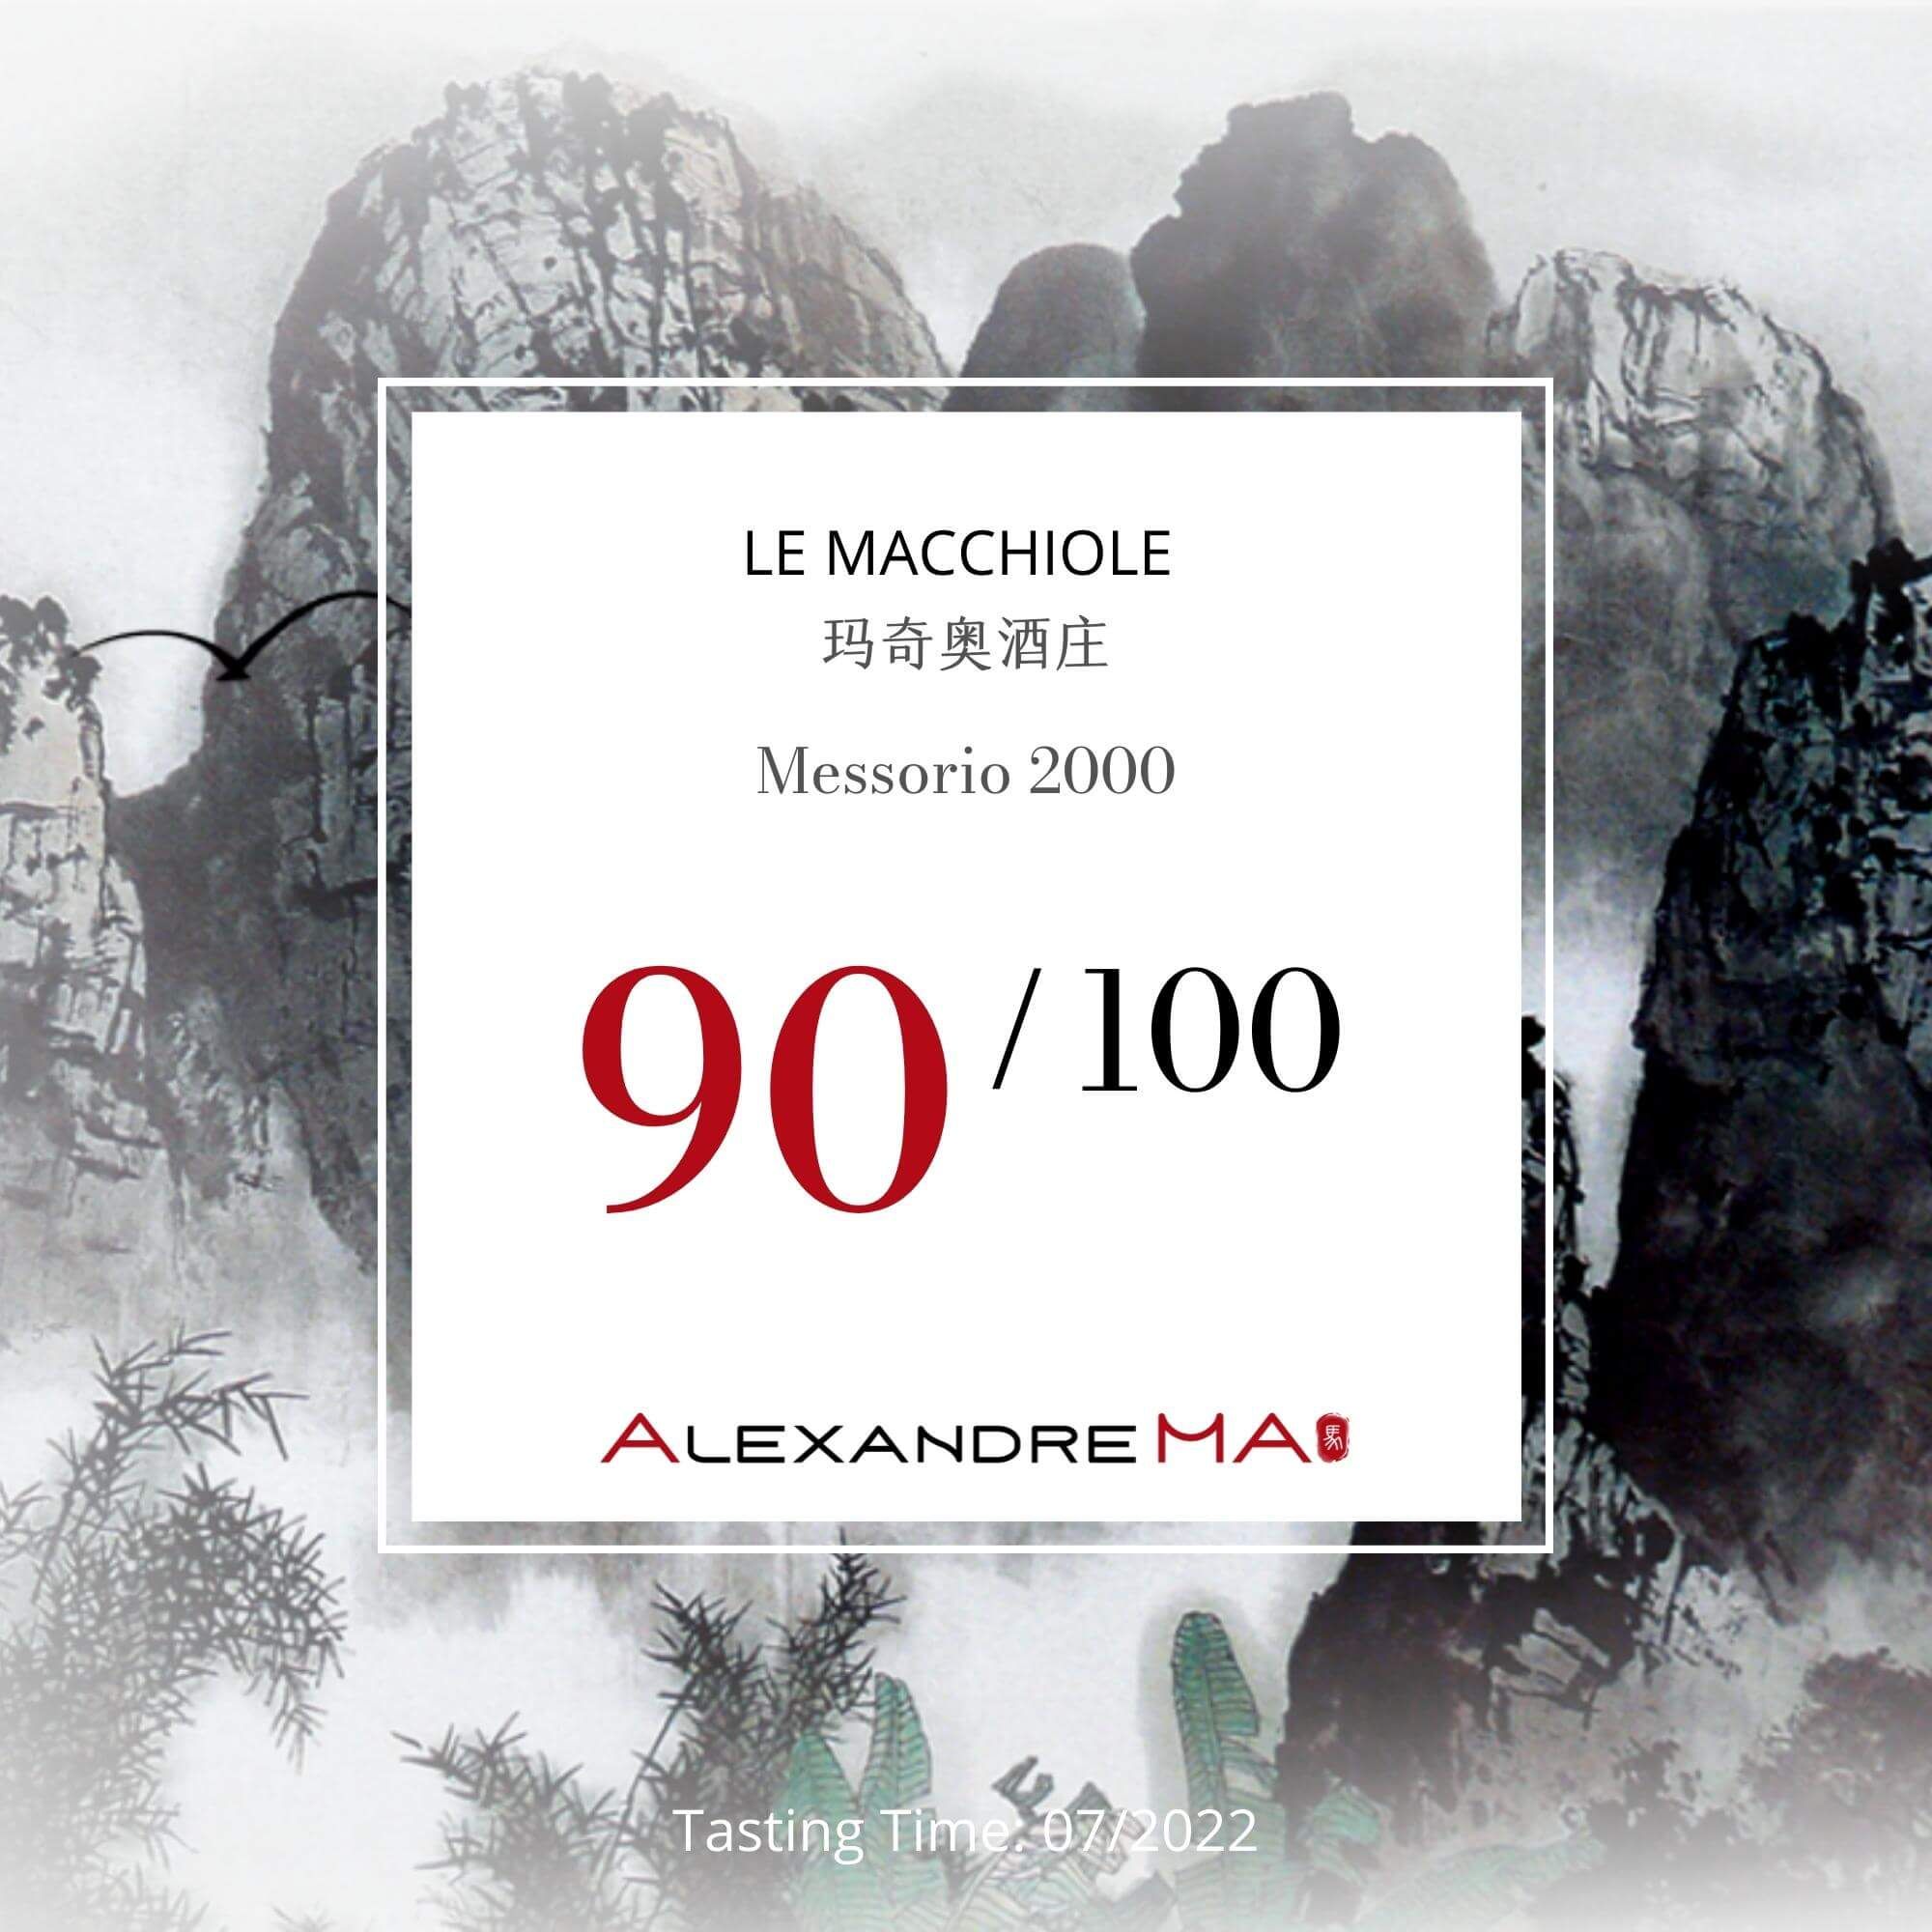 Le Macchiole Messorio 2000 - Alexandre MA